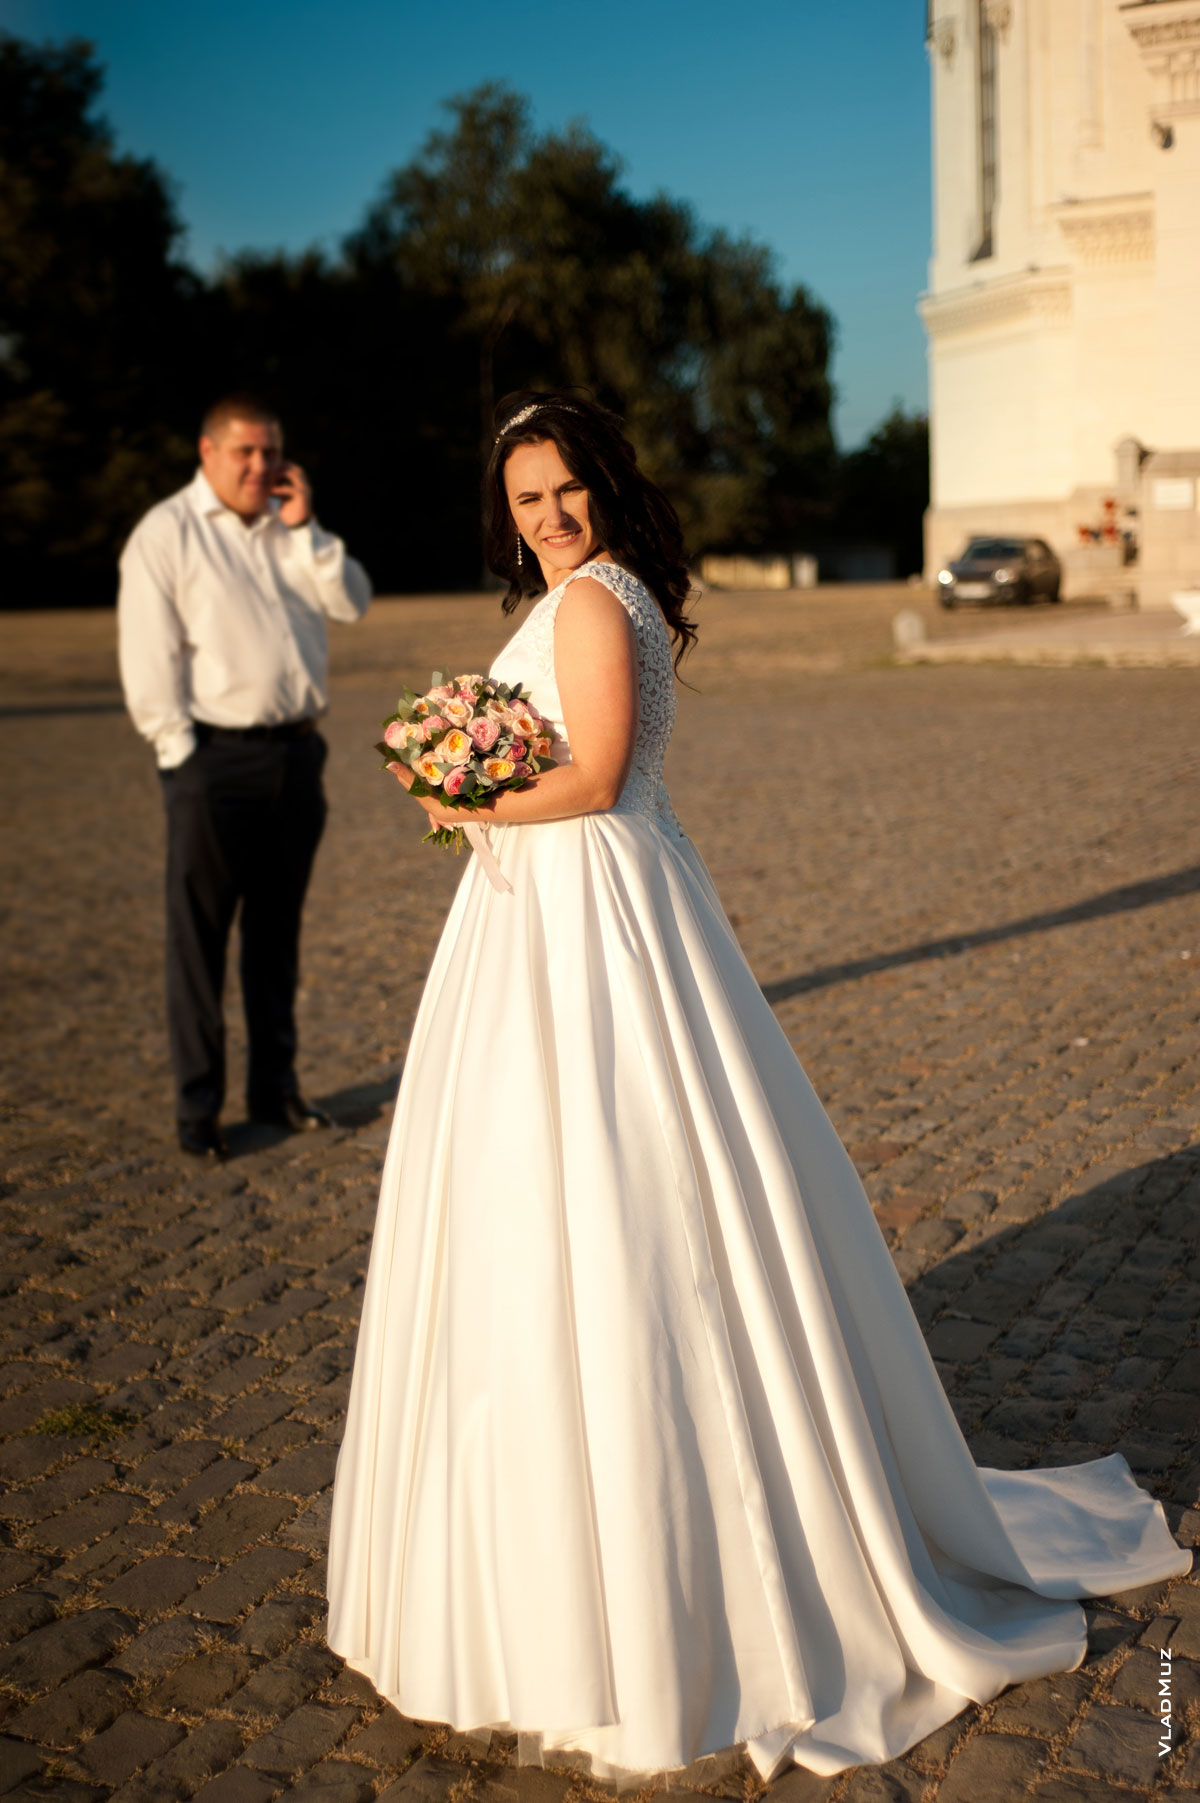 Фото невесты с букетом в фокусе, жених стоит вдали и говорит по телефону